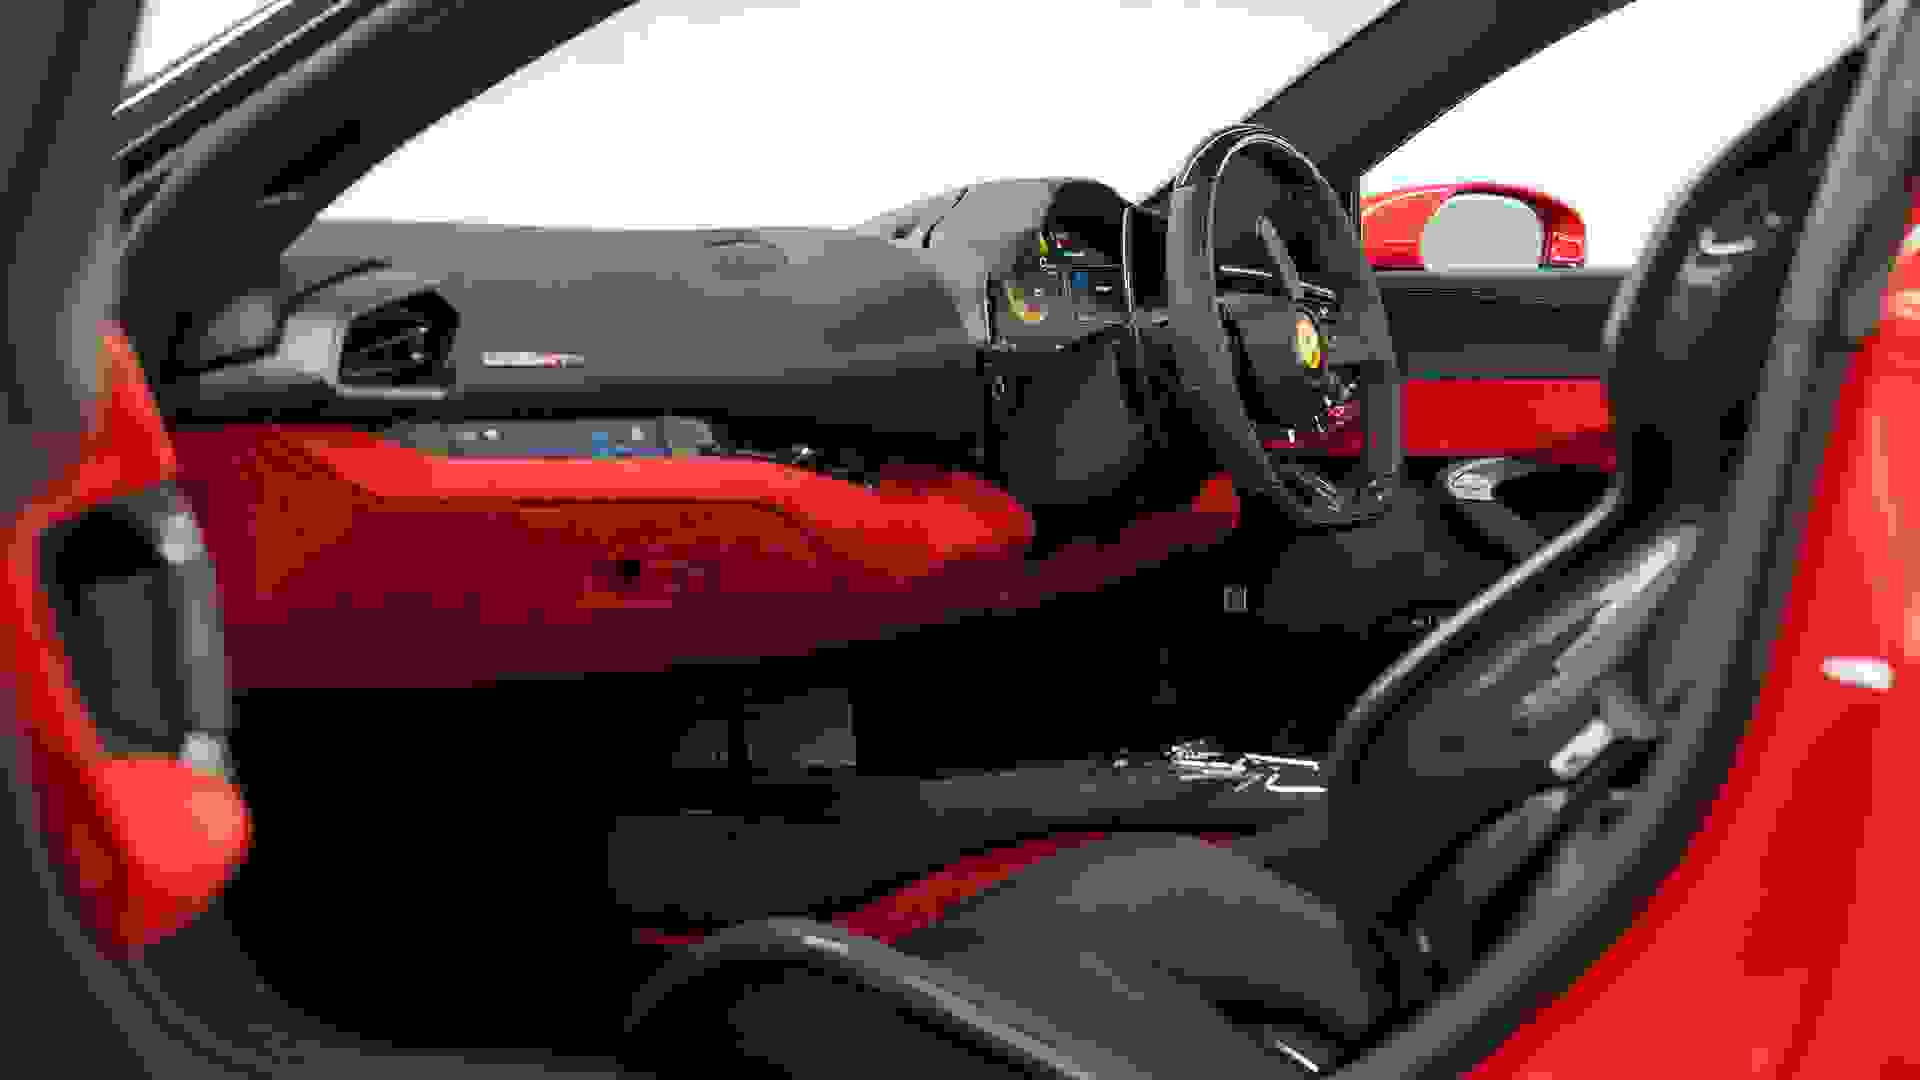 Ferrari 296 Photo 57b3ee08-8822-4d50-8a09-45ab46cdd7d7.jpg